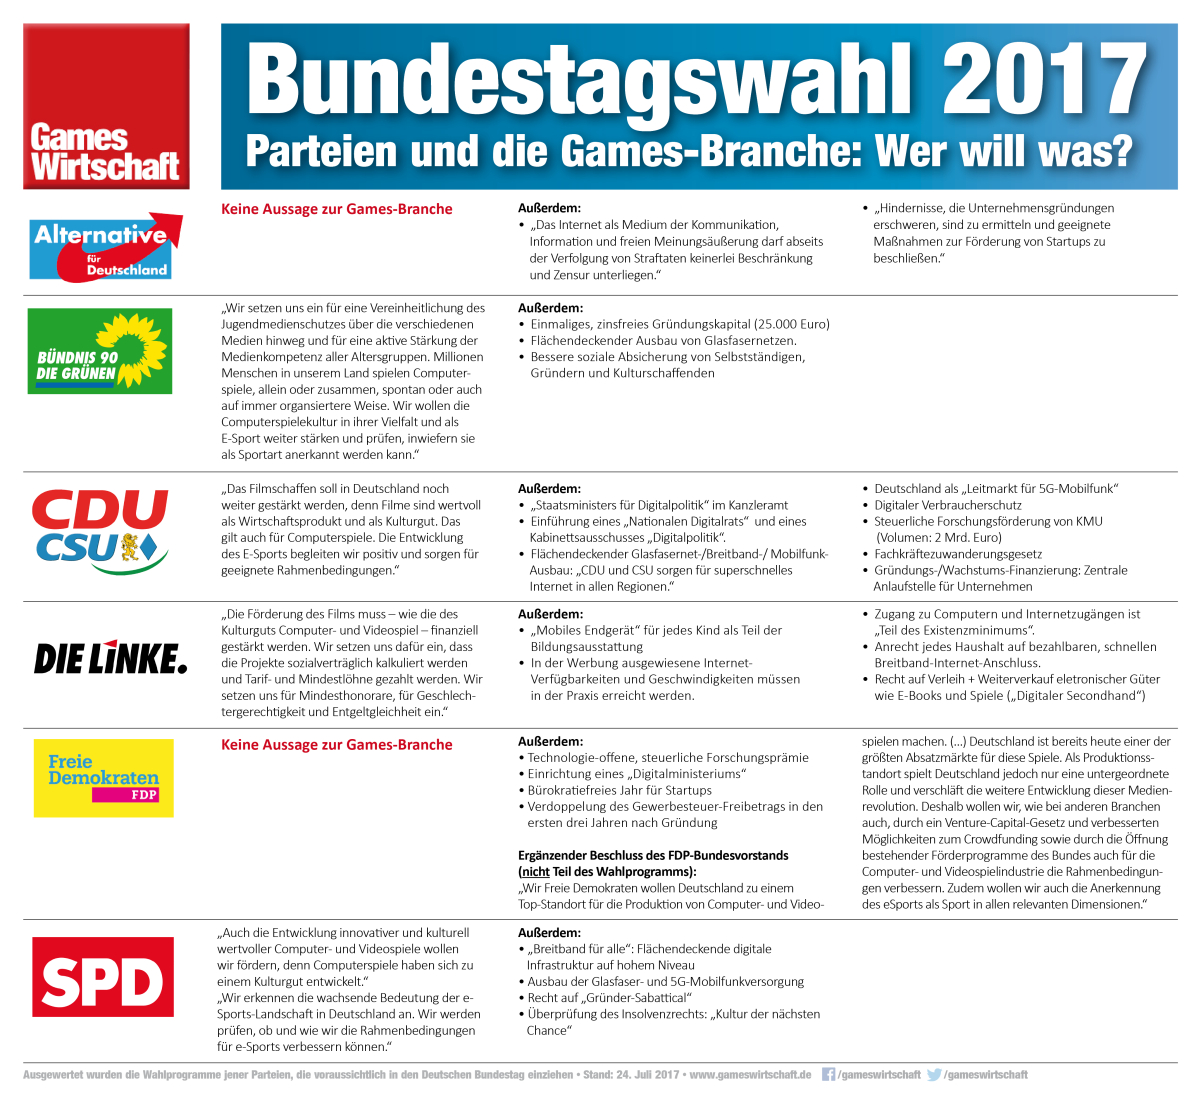 Bundestagswahl 2017: Was steht in den Wahlprogrammen zum Thema Games? (Stand: 24.7.2017)